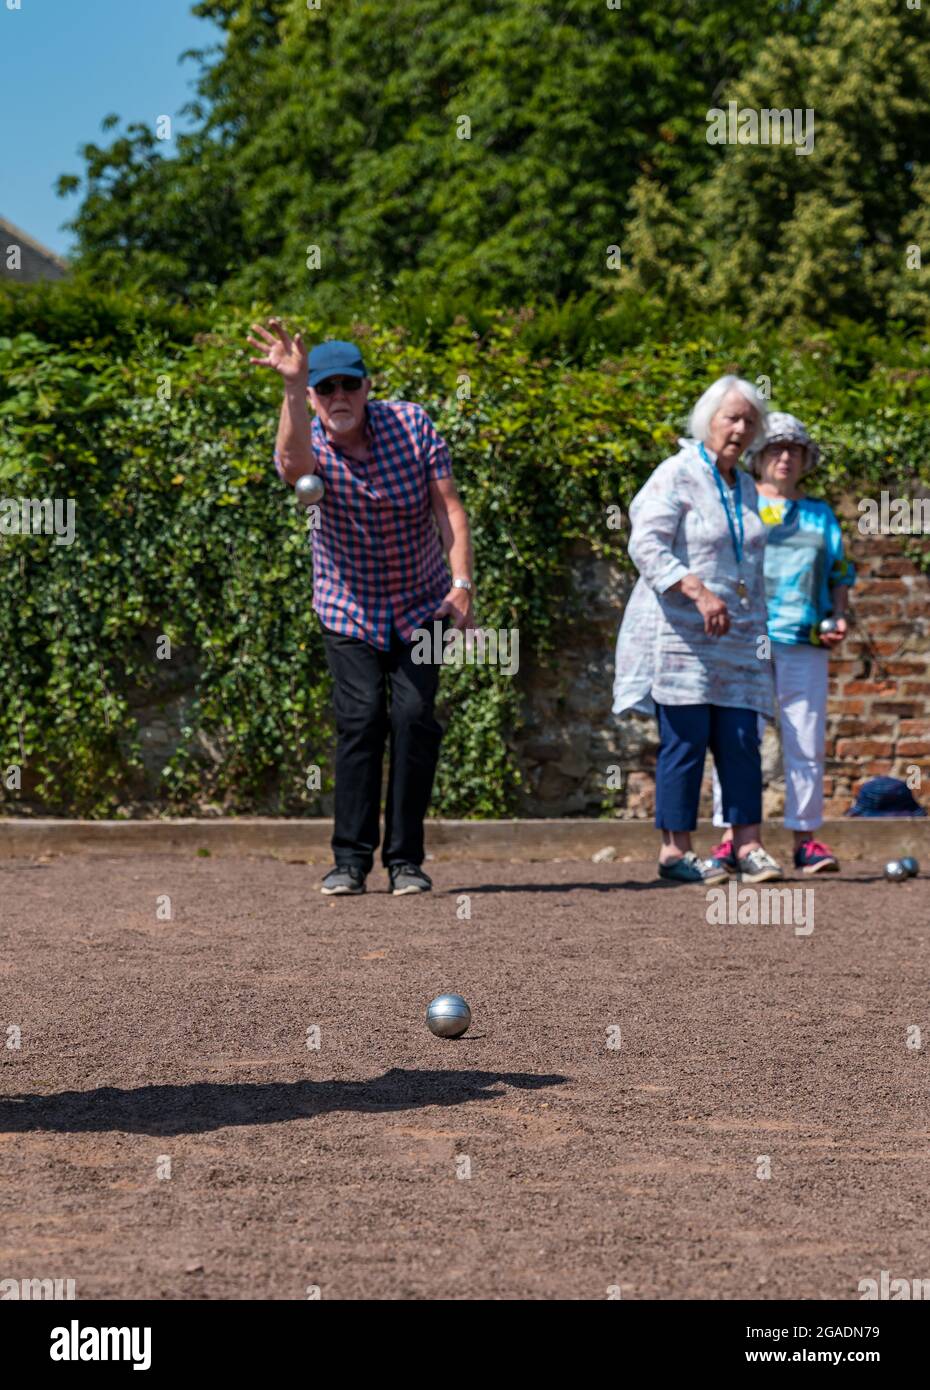 Senioren, ältere Menschen oder Rentner, die im Sommer bei Sonnenschein Petanque oder Boule spielen, Haddington, East Lothian, Schottland, Großbritannien Stockfoto